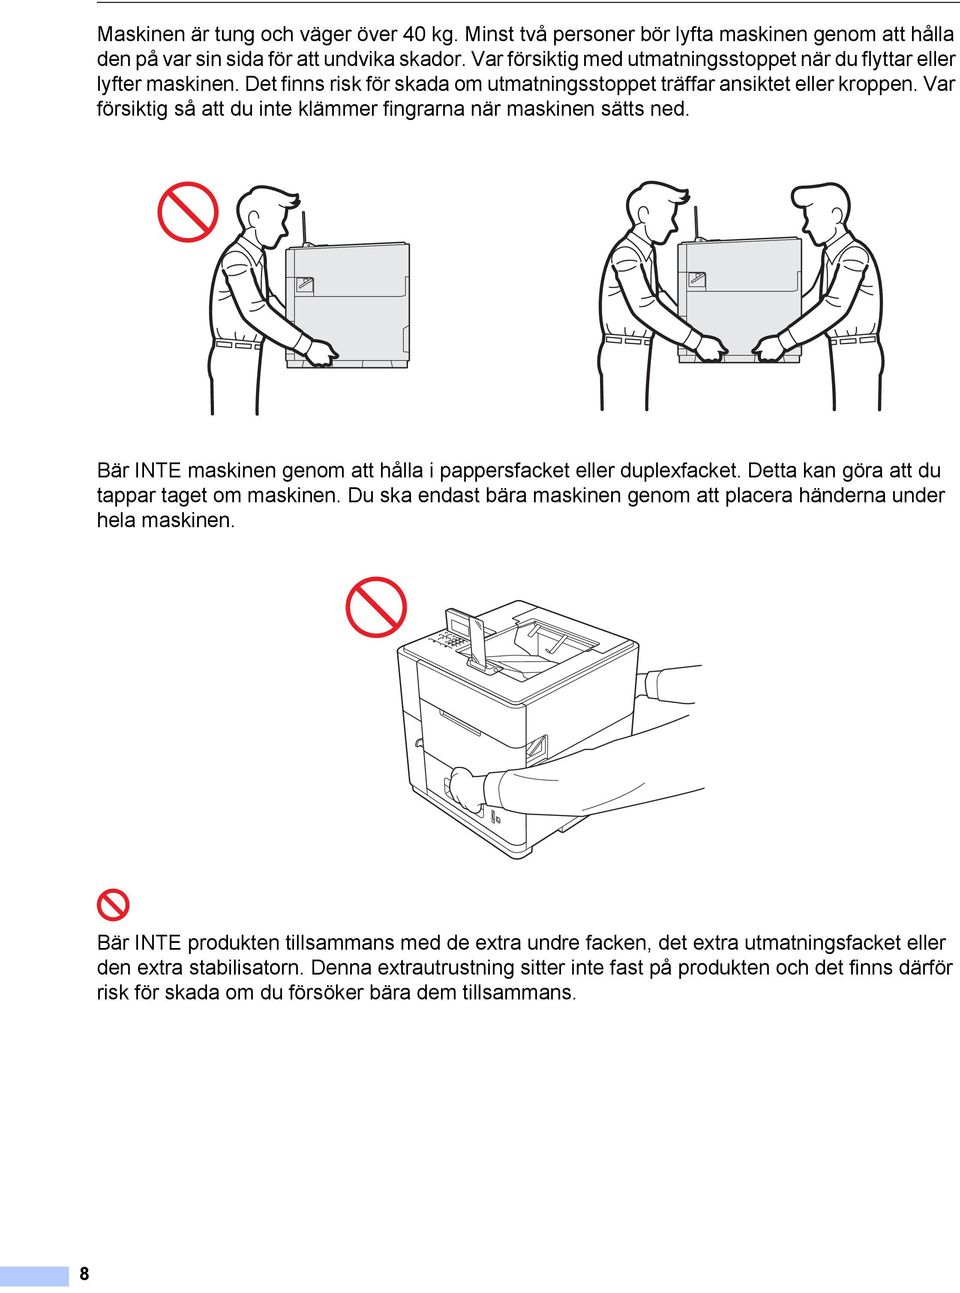 Var försiktig så att du inte klämmer fingrarna när maskinen sätts ned. Bär INTE maskinen genom att hålla i pappersfacket eller duplexfacket. Detta kan göra att du tappar taget om maskinen.